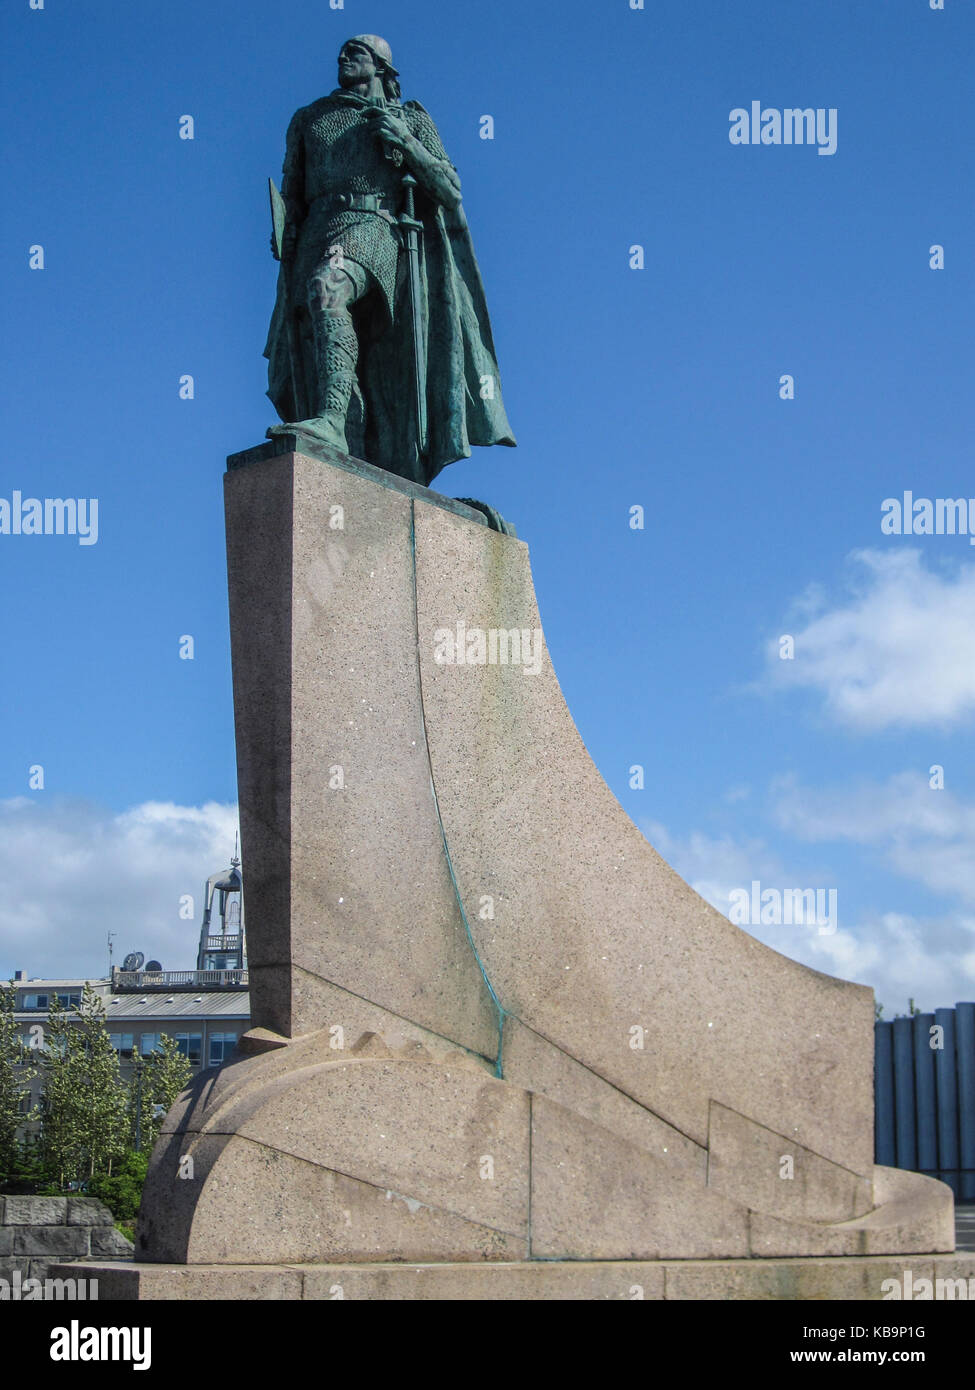 Statue de Leif Erikson à Reykjavik, Islande. ericsson a été un explorateur scandinaves de l'Islande et le premier Européen connu à avoir découvert petit nort Banque D'Images